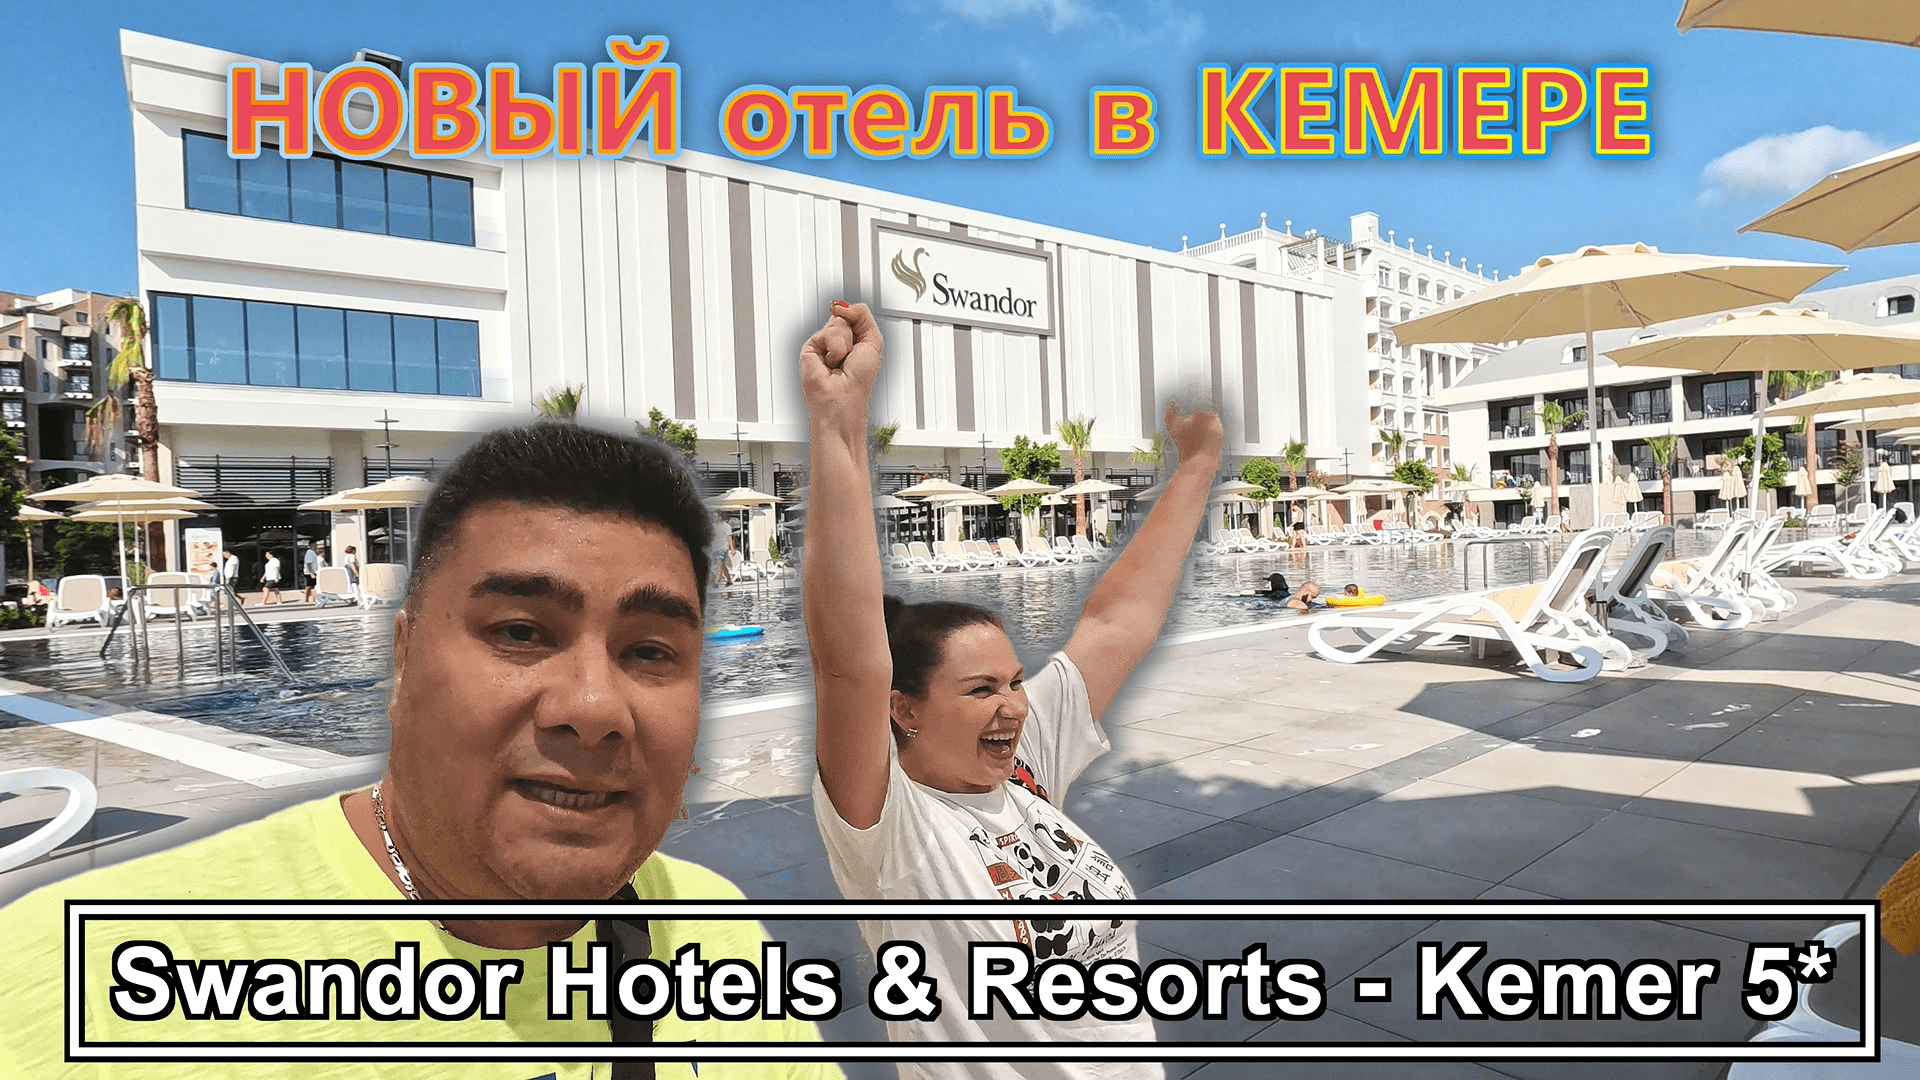 Swandor Hotels & Resorts - Kemer 5*✔ НОВЫЙ отель в Кемере!!! Как он и что ждет туристов?